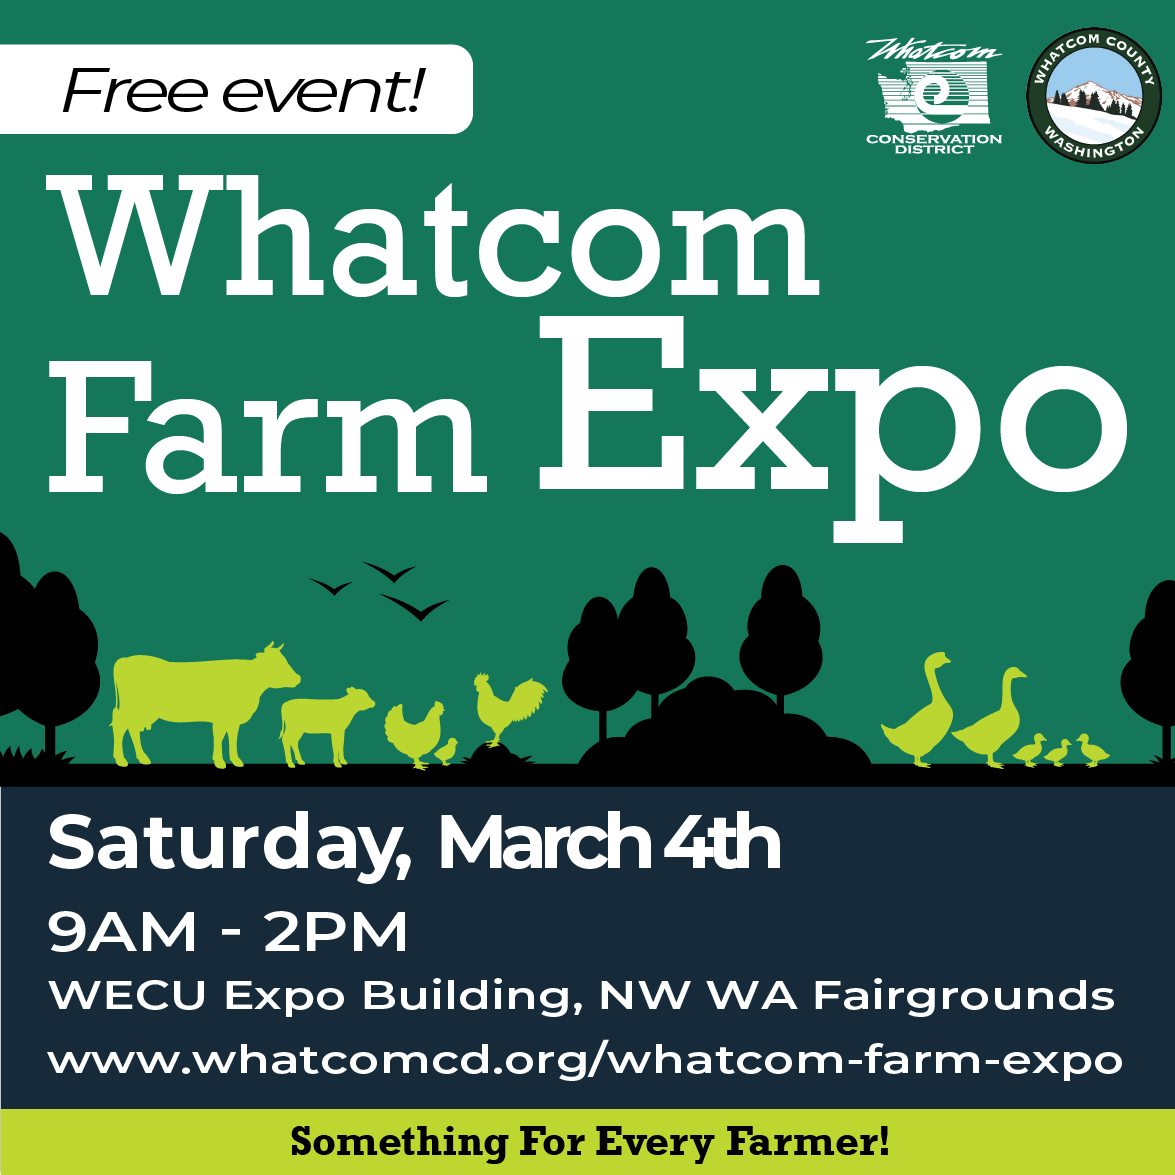 Whatcom Farm Expo